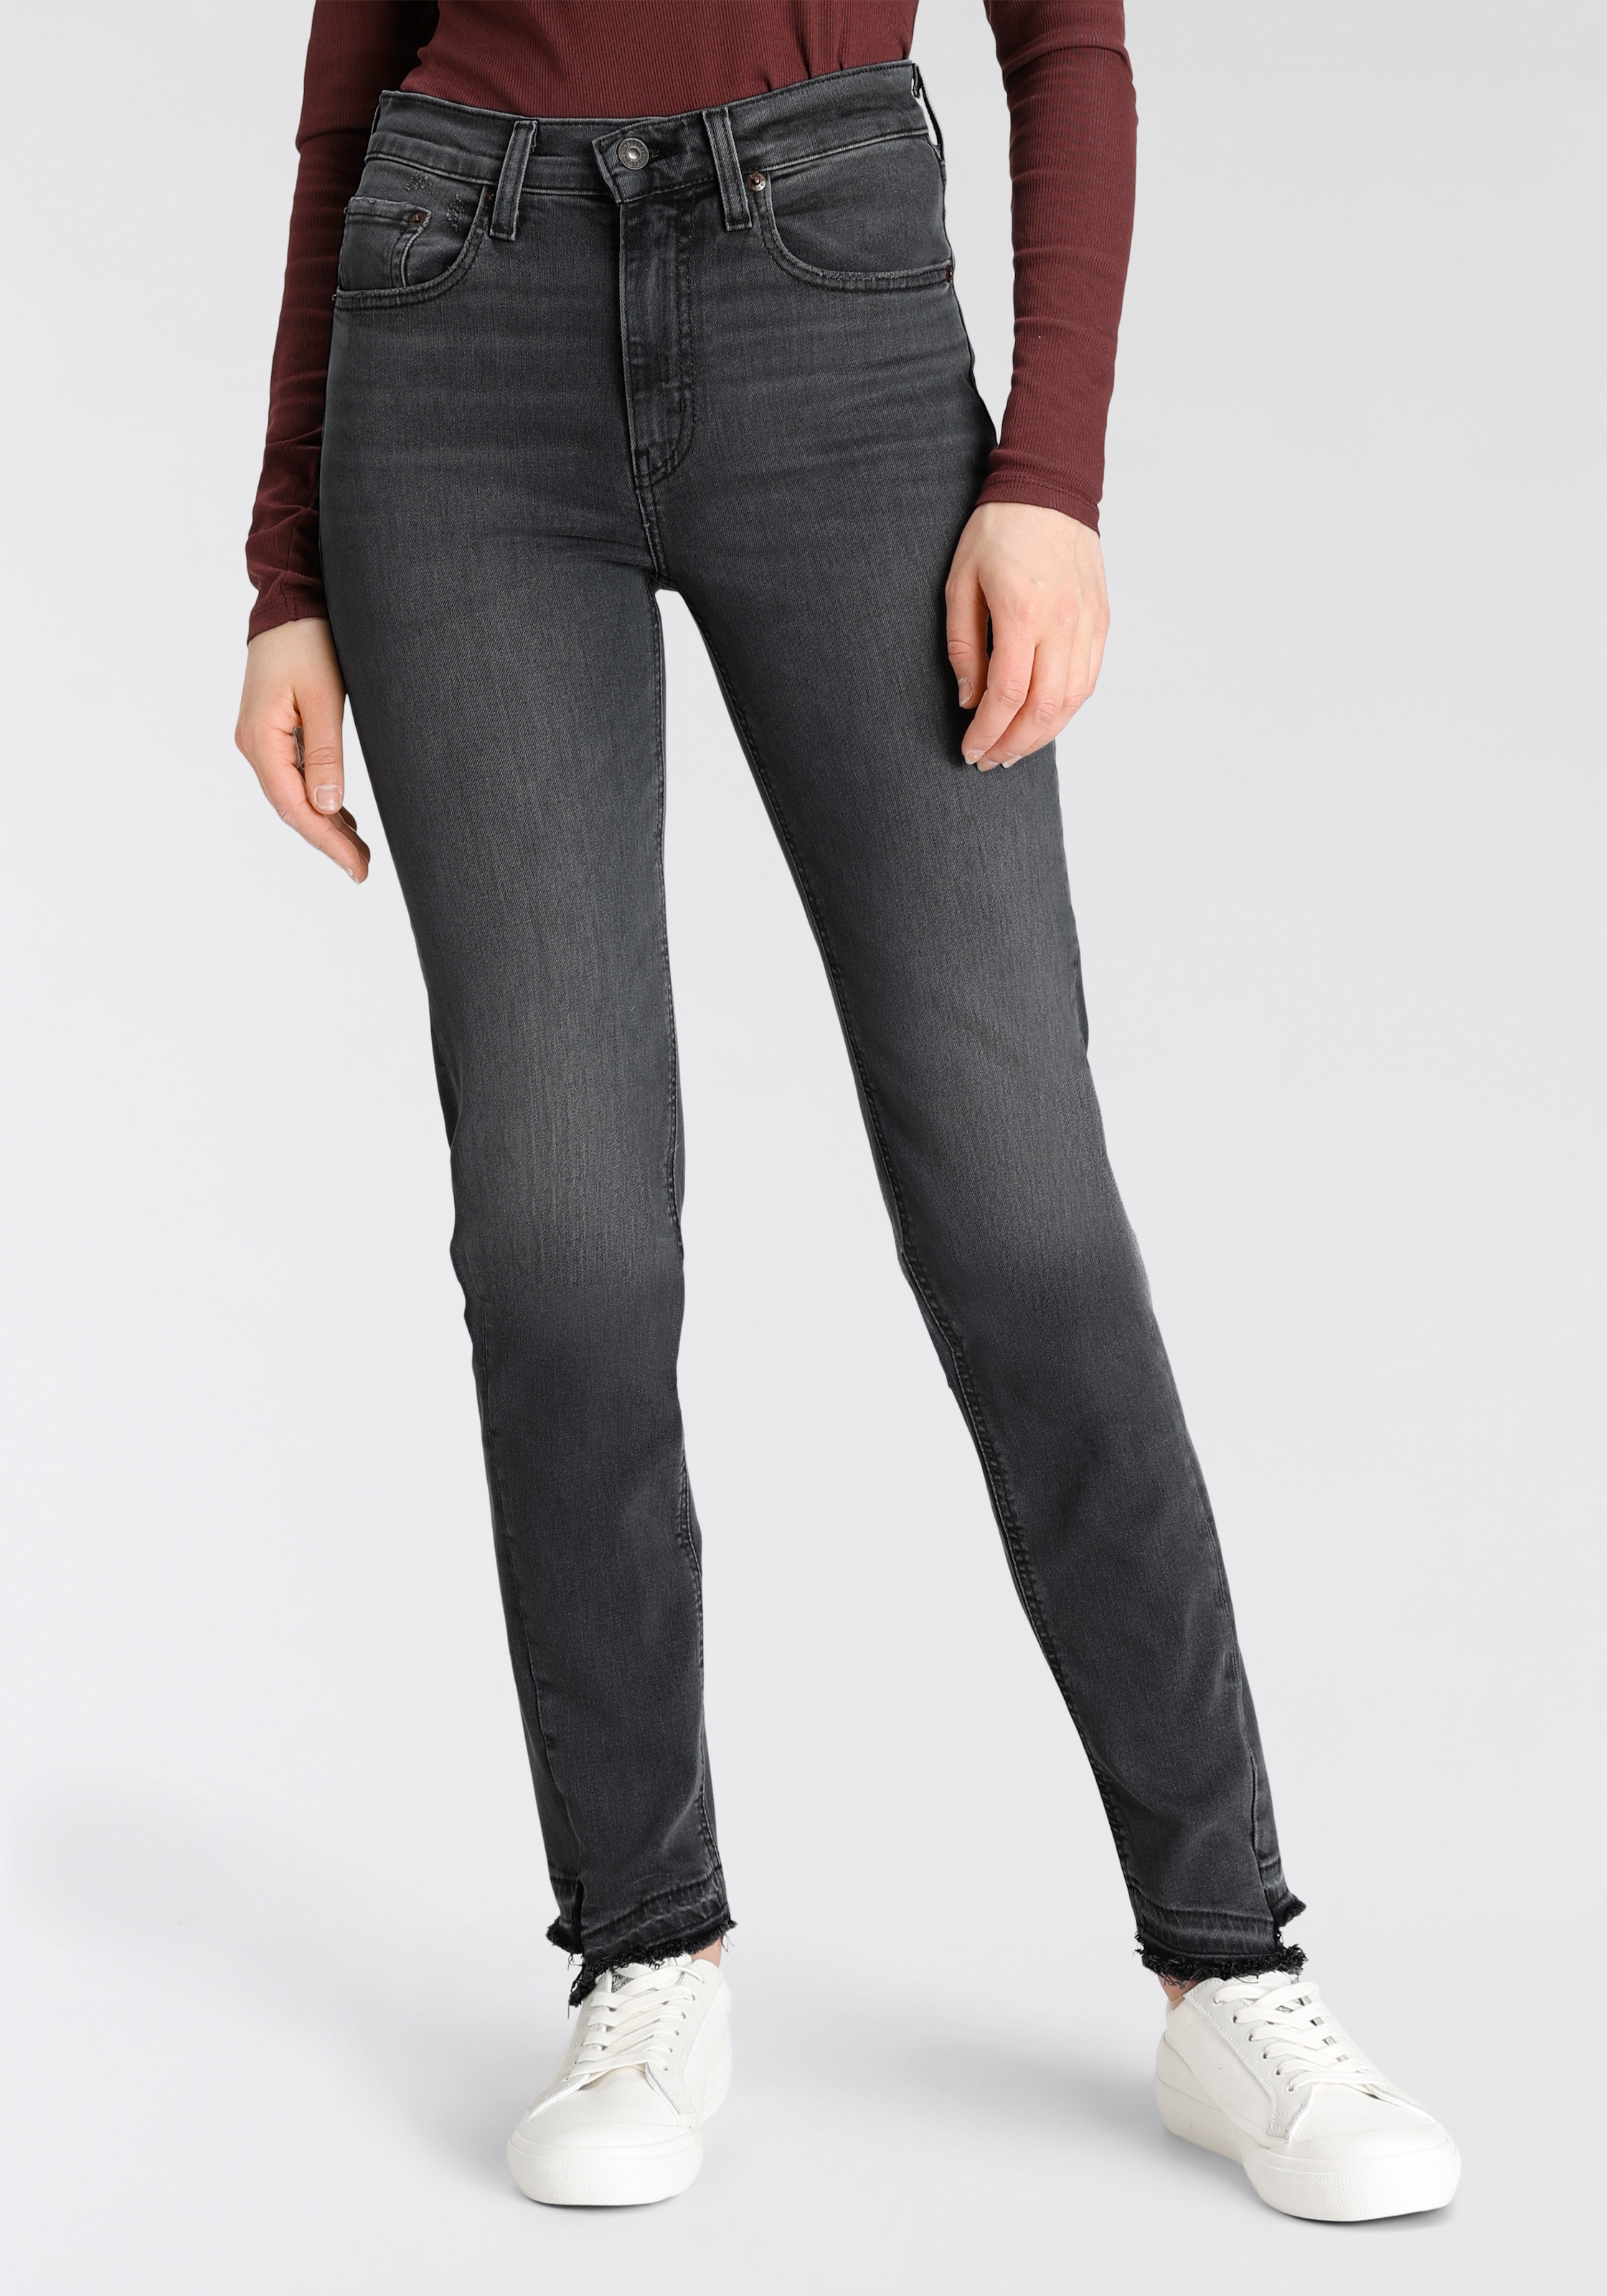 Jeans mit Fransensaum für Damen kaufen BAUR | online